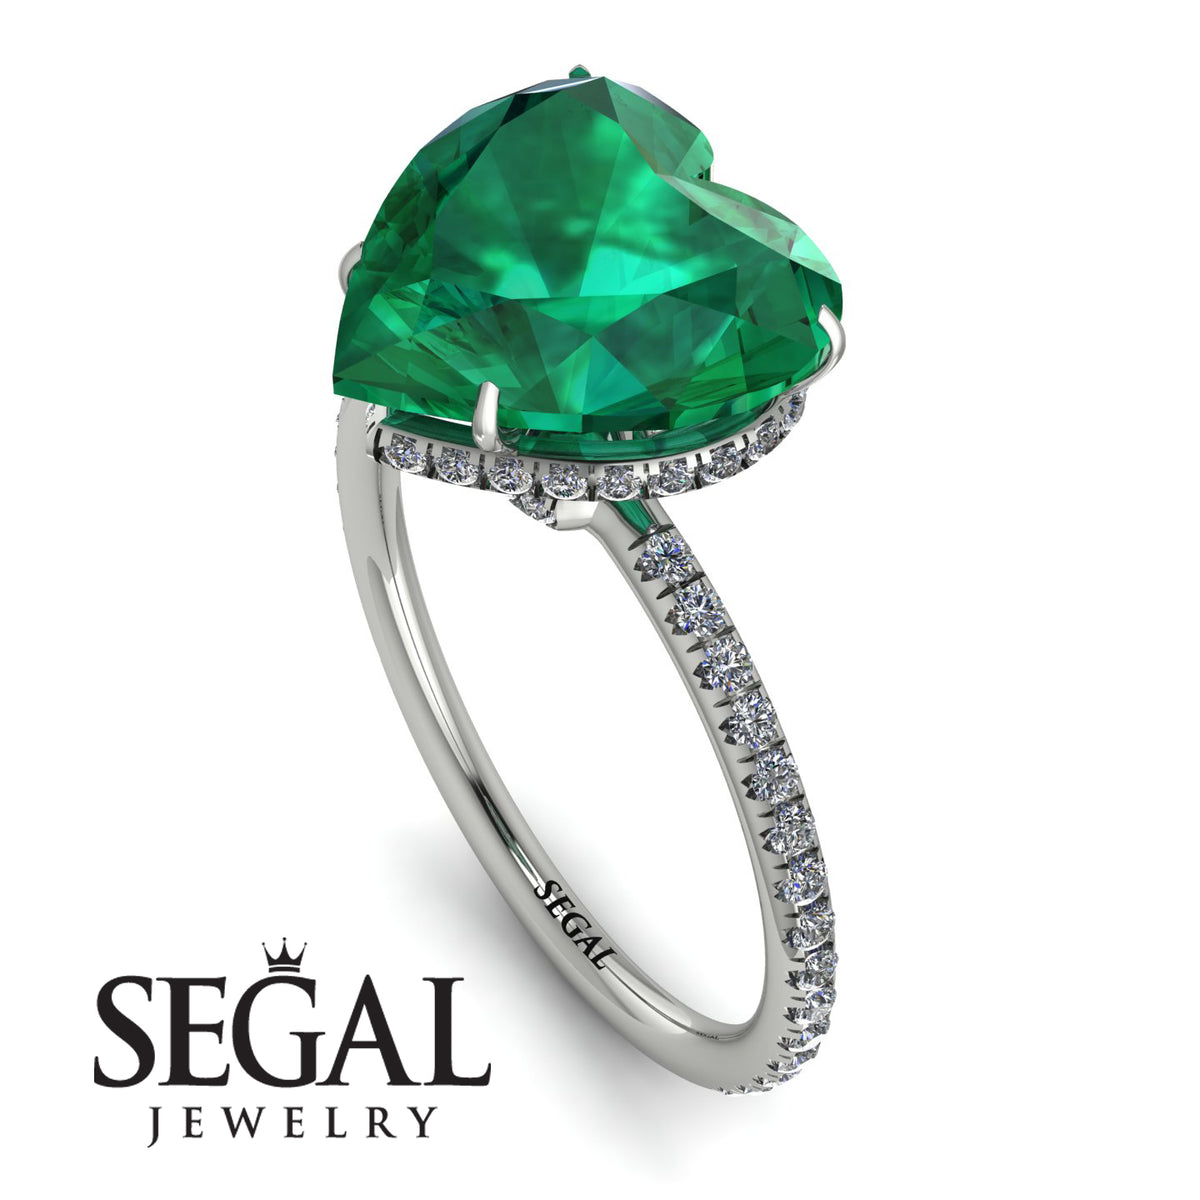 Buy Raw Emerald Cut Emerald Ring, Raw Emerald Engagement Ring, Emerald Ring,  Real Vintage Emerald Cut Ring, Engagement Ring Online in India - Etsy